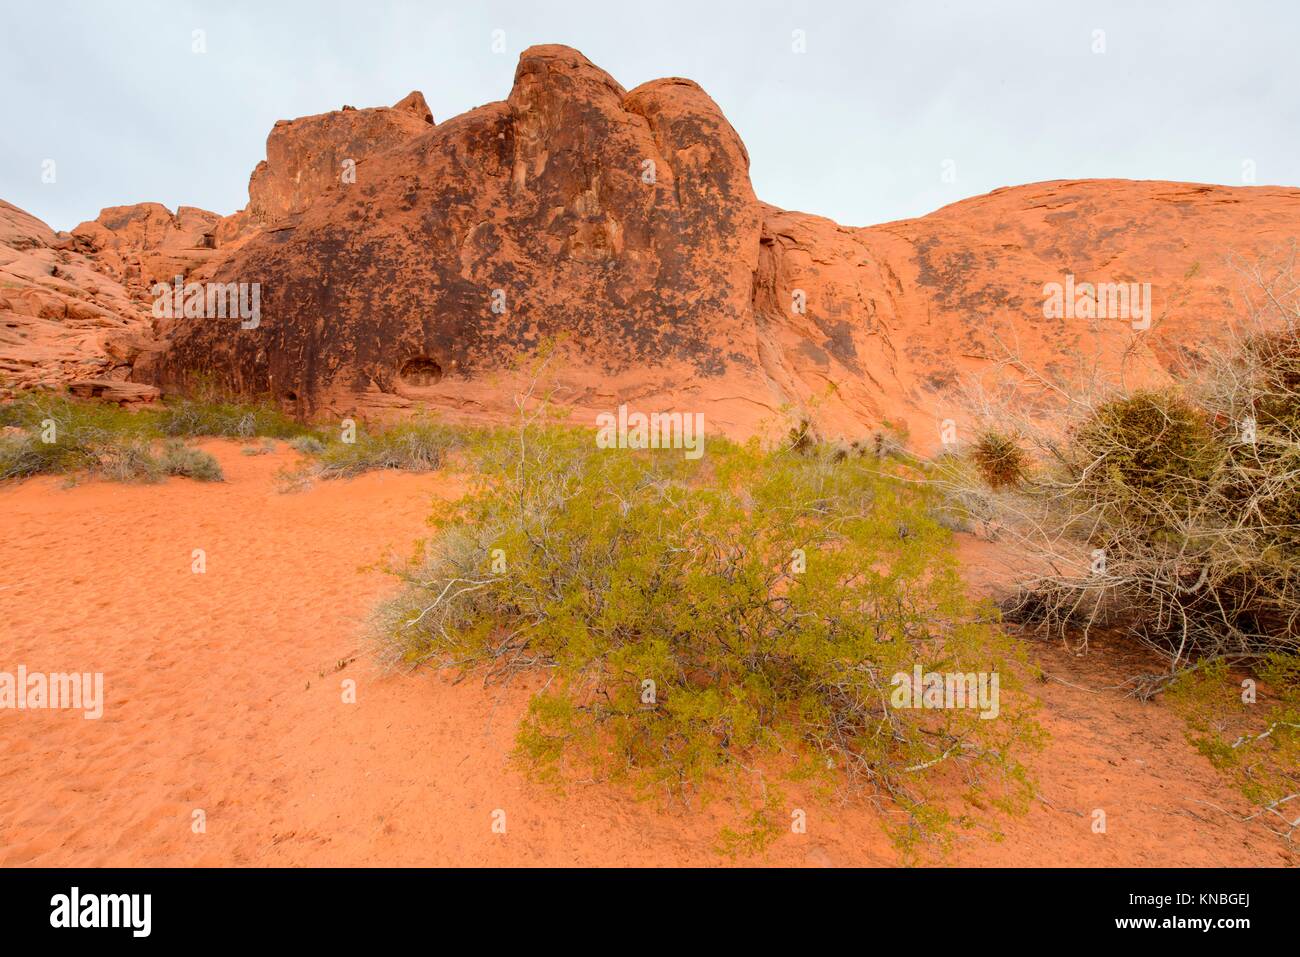 Weathered red formazioni rocciose nel deserto, la Valle del Fuoco del parco statale, Nevada, Stati Uniti d'America. Foto Stock